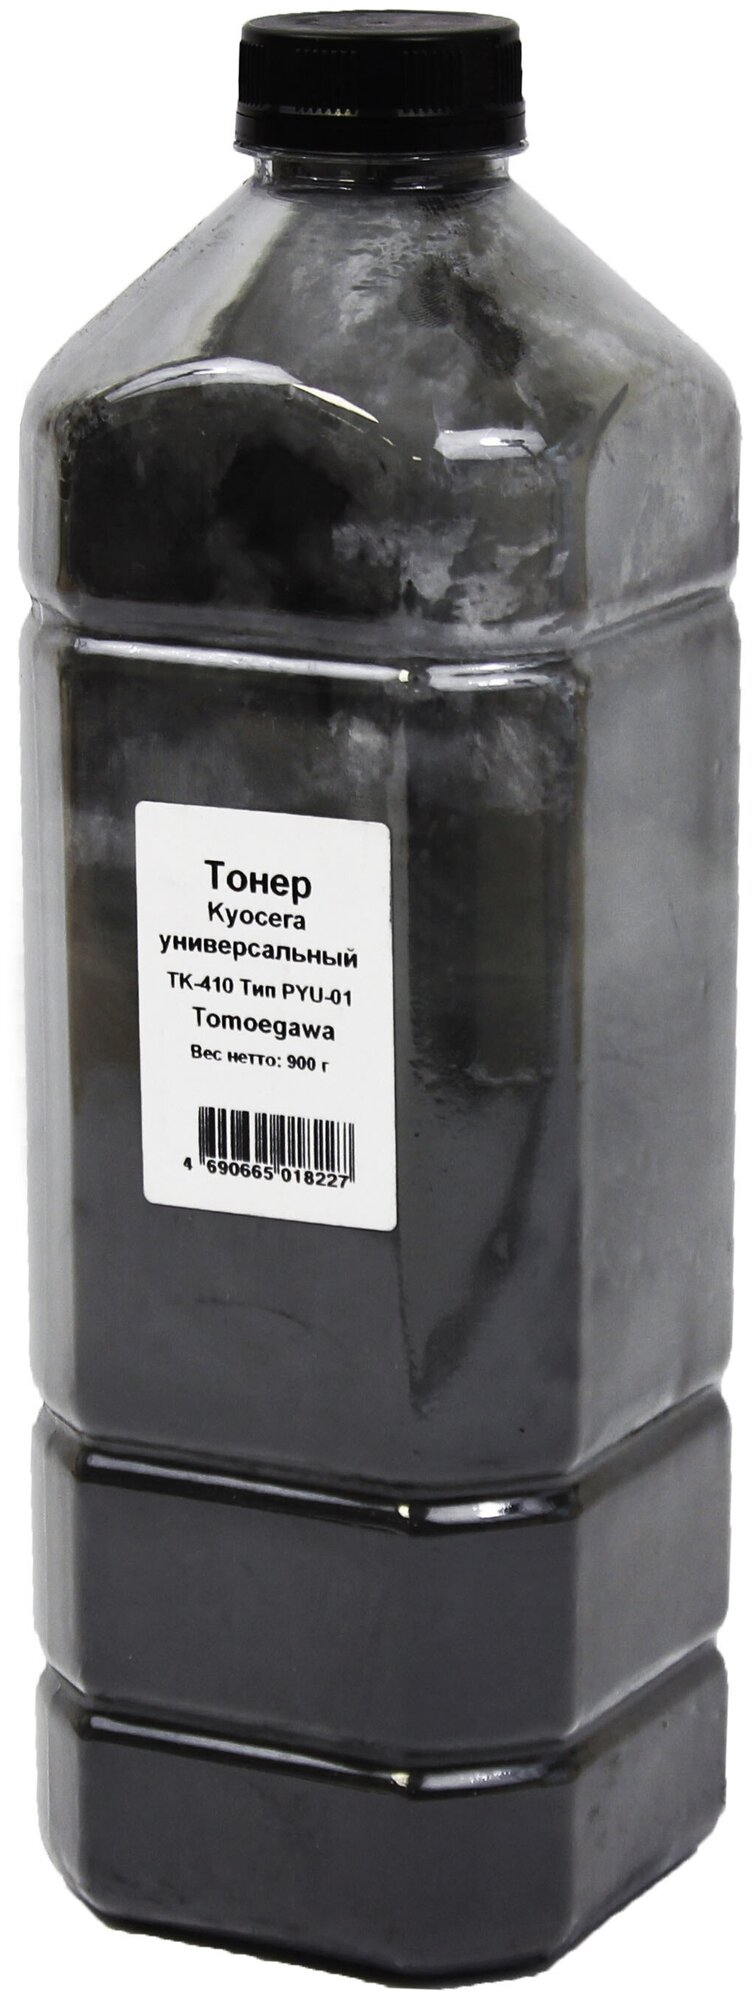 Тонер Tomoegawa Универсальный для Kyocera TK-410 (Тип PYU-01), Bk, 900 г, канистра